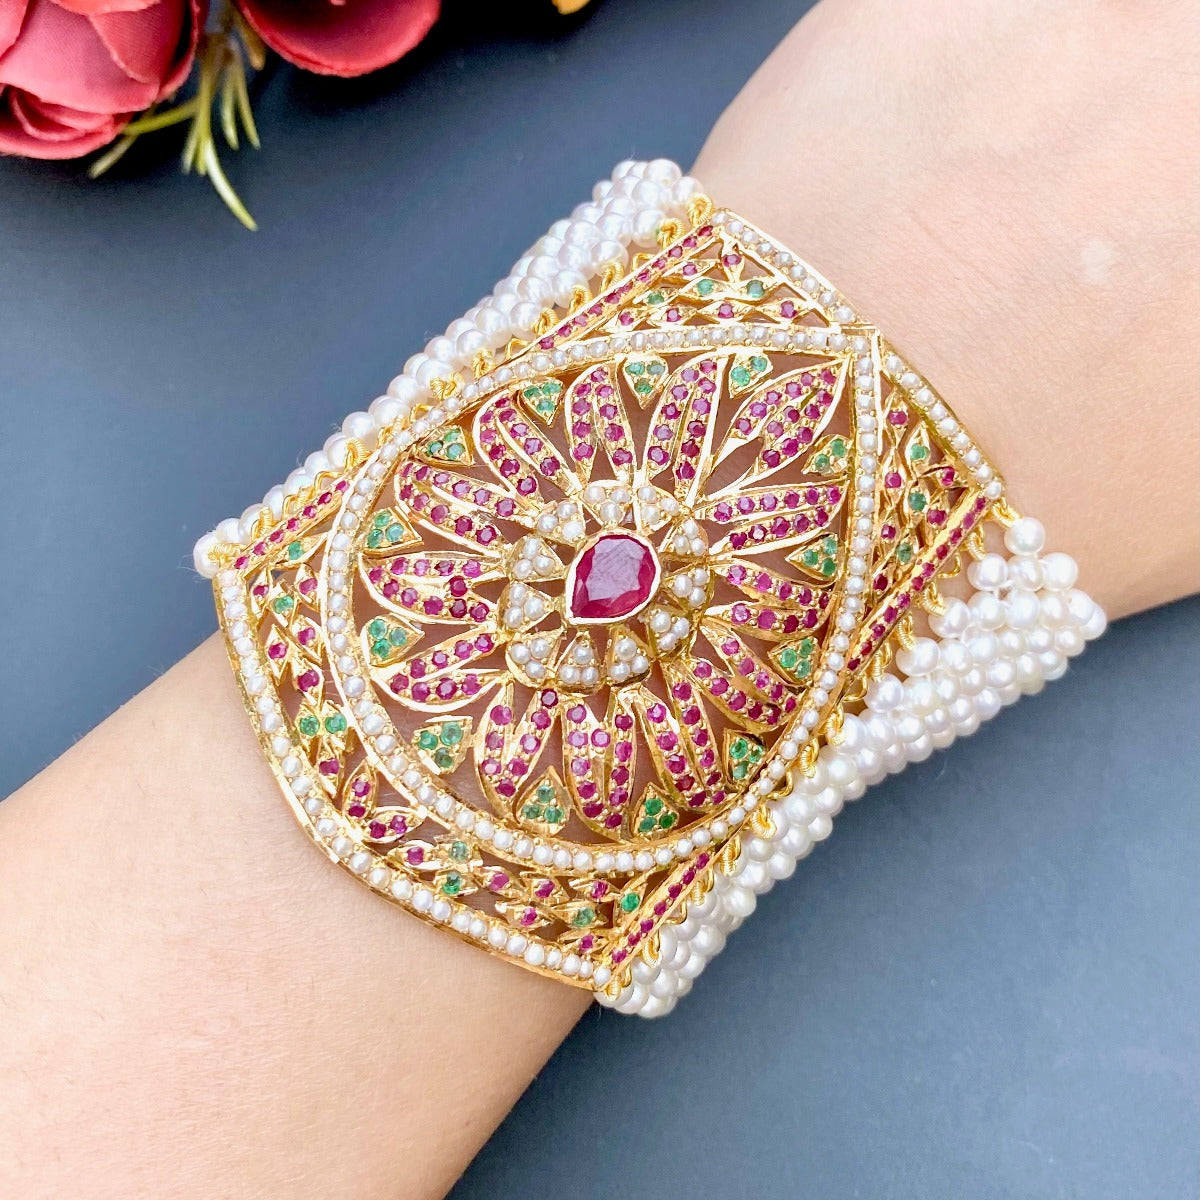 22k gold bracelet with mughal design